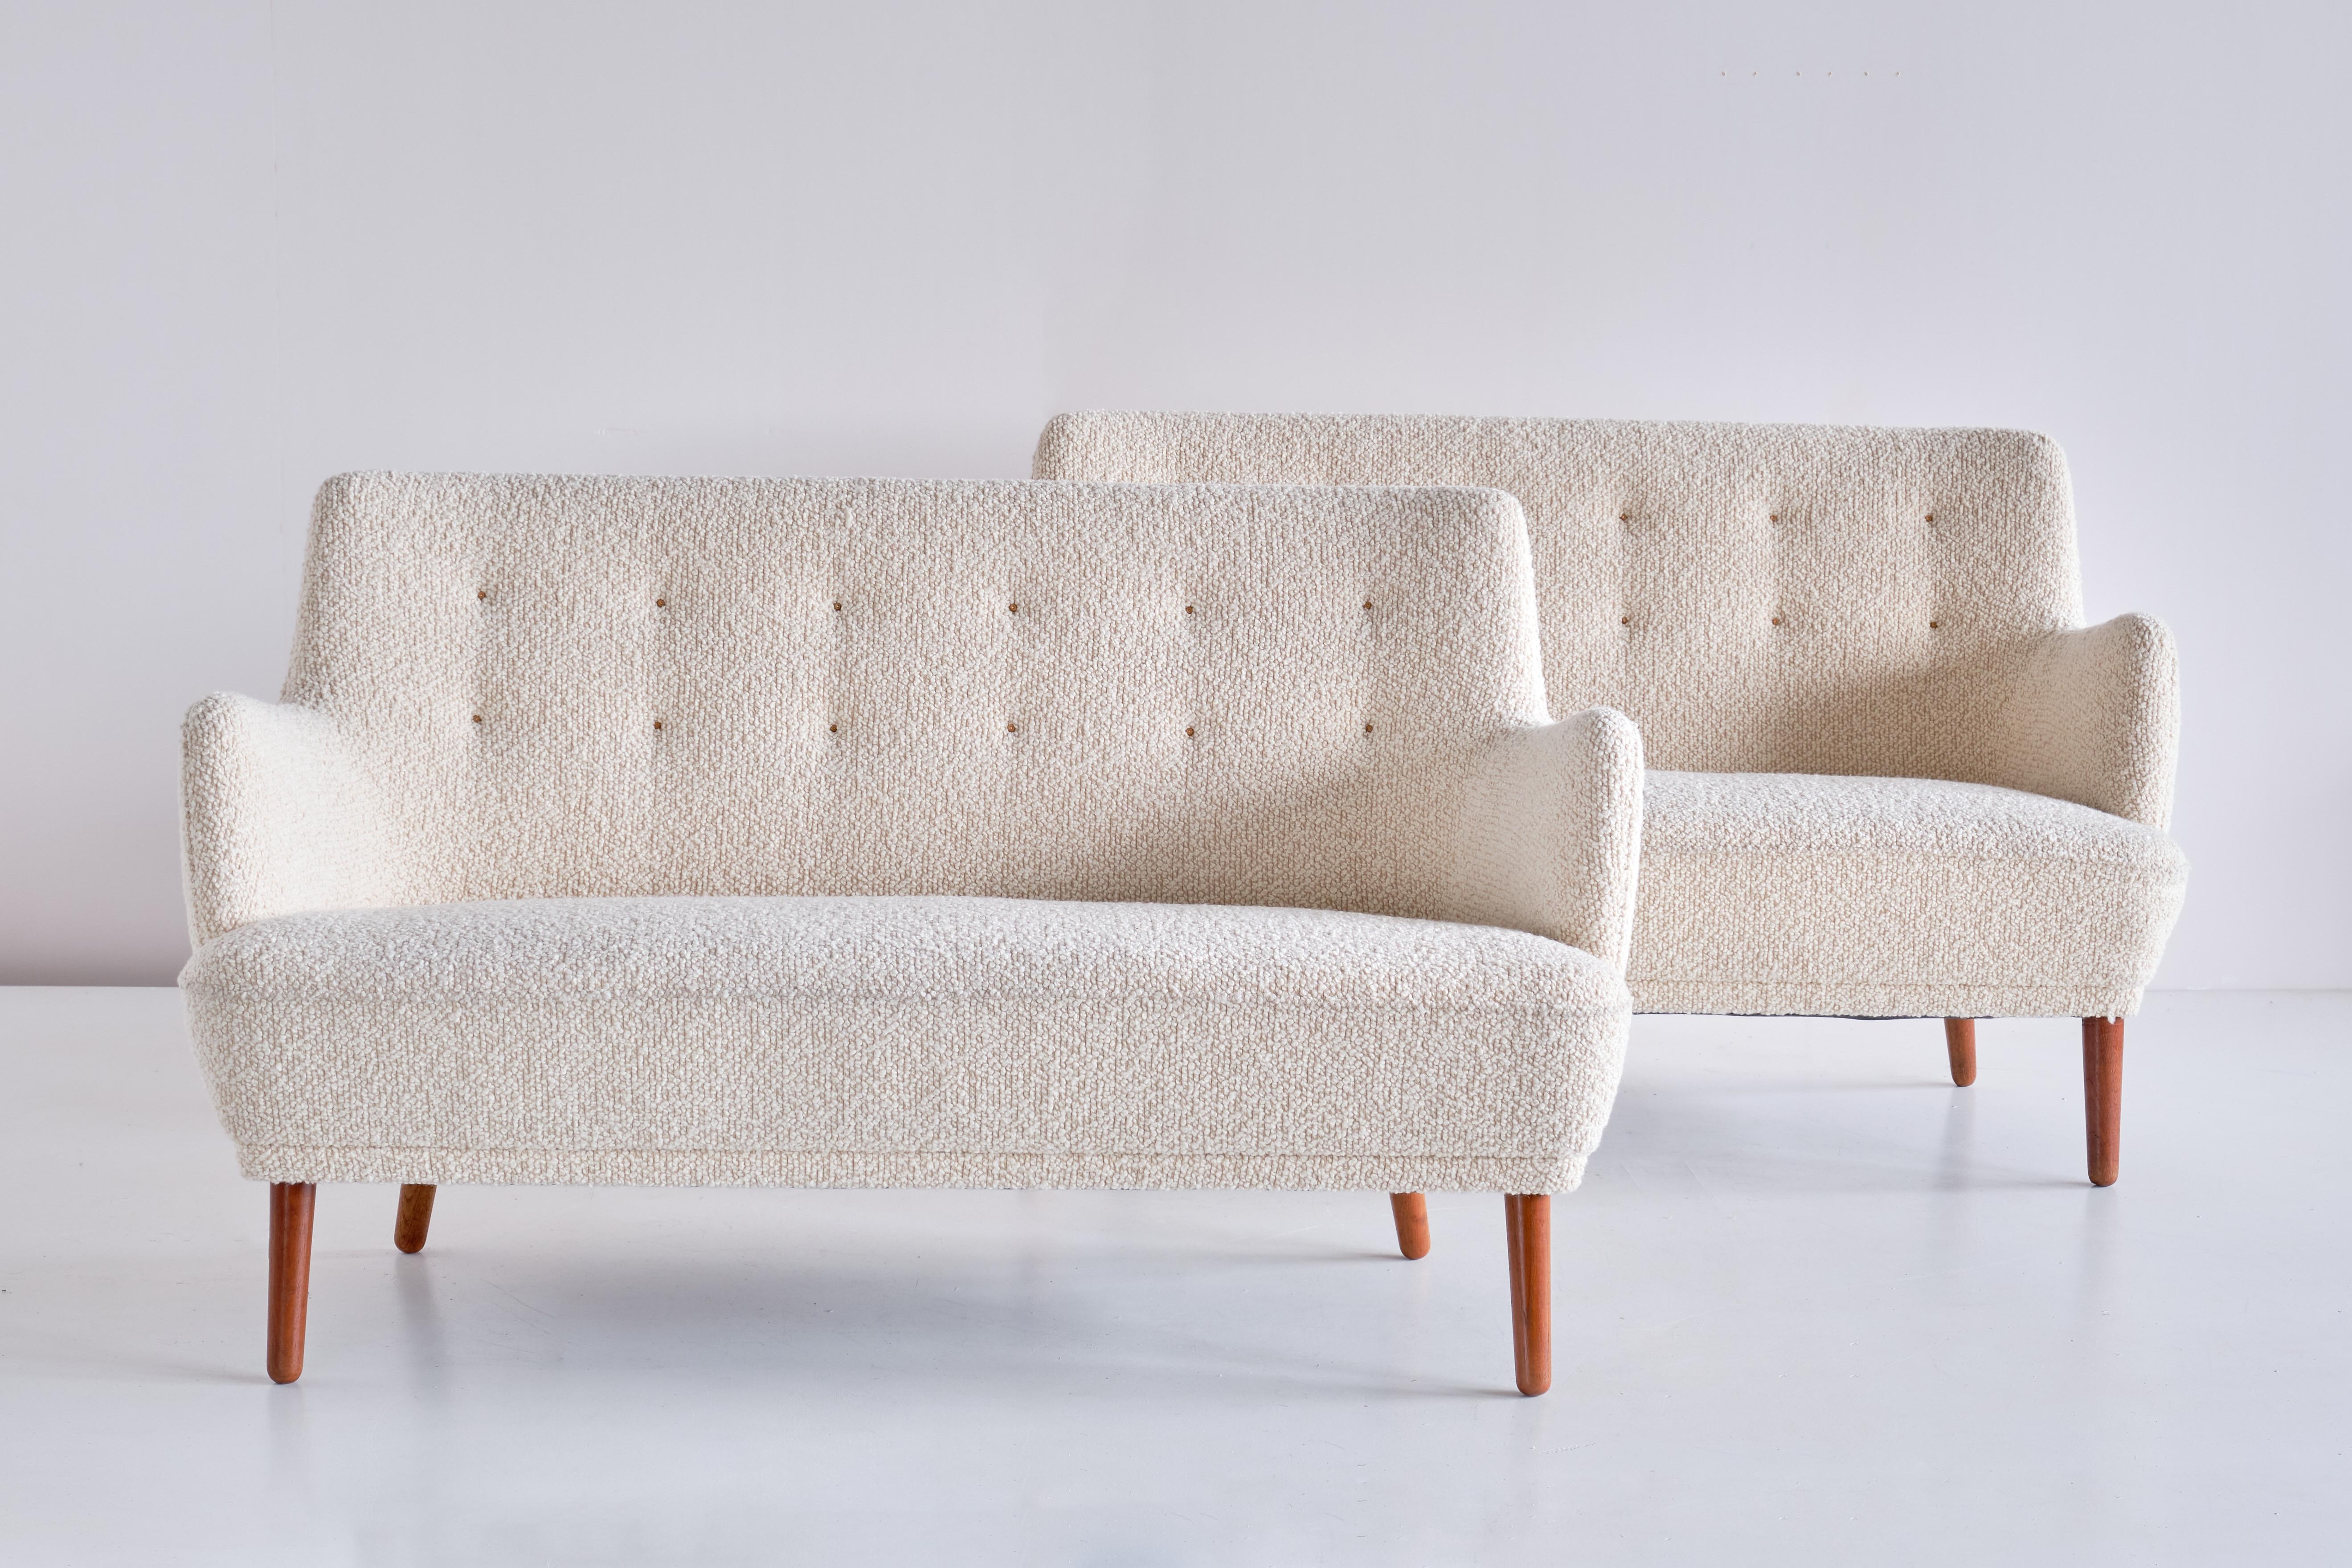 Ce canapé deux places exceptionnellement rare a été conçu par Tove & Edvard Kindt-Larsen et produit par le maître ébéniste Gustav Bertelsen au début des années 1950. Le canapé a été nouvellement tapissé d'un tissu bouclé en laine blanc ivoire avec